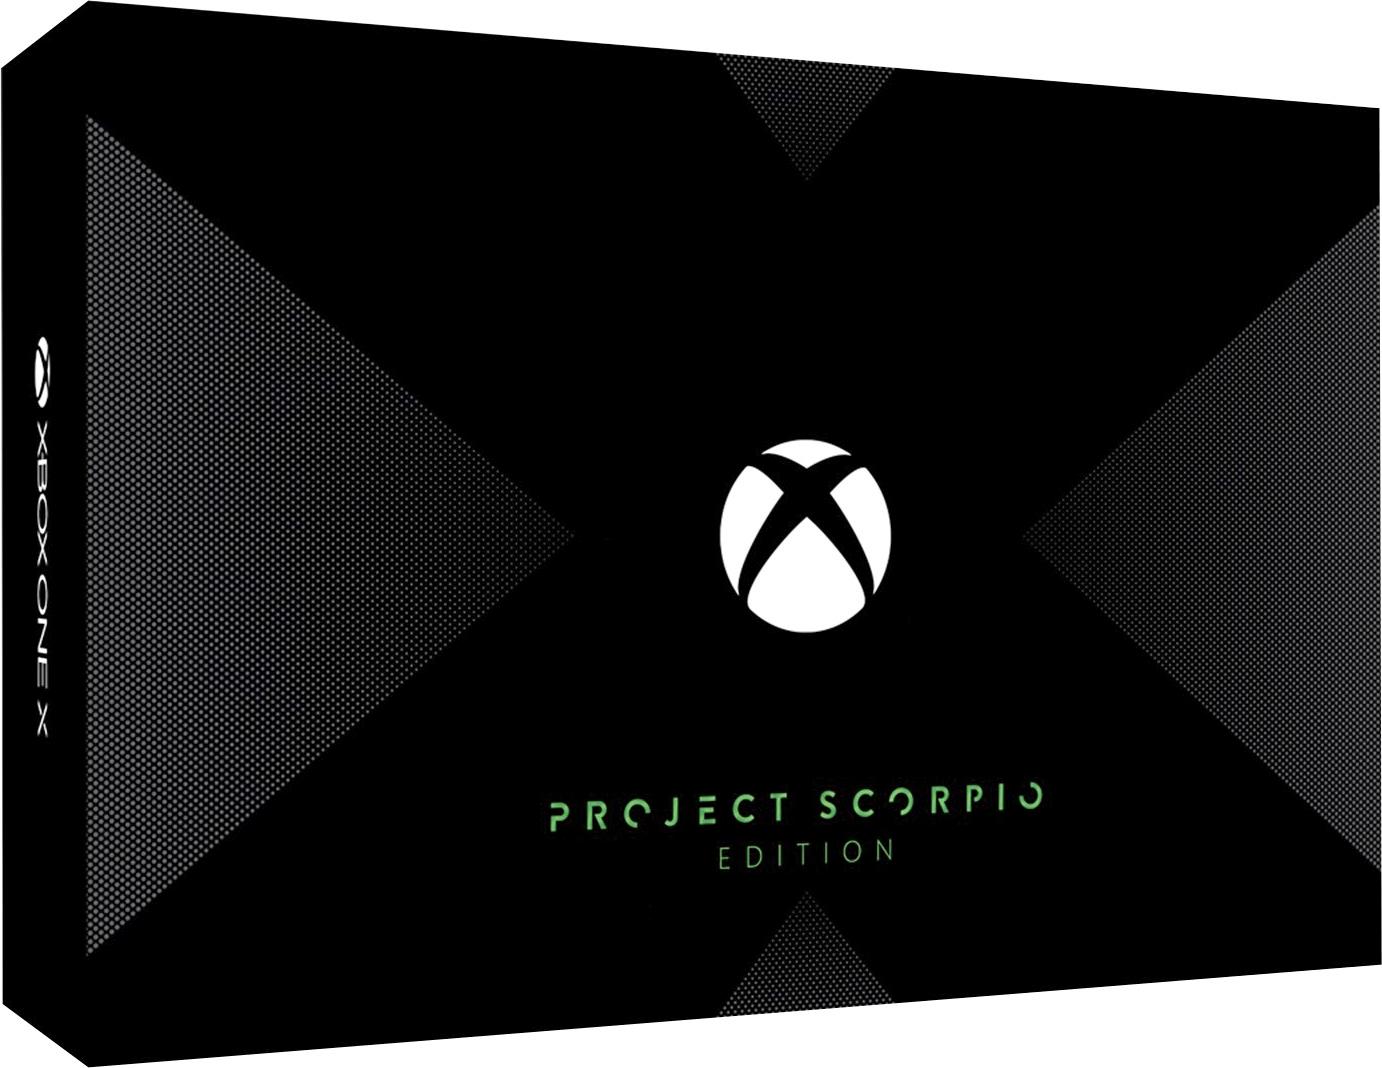 Xbox One X: Project Scorpio Edition için belirlenen Türkiye fiyatında geri adım